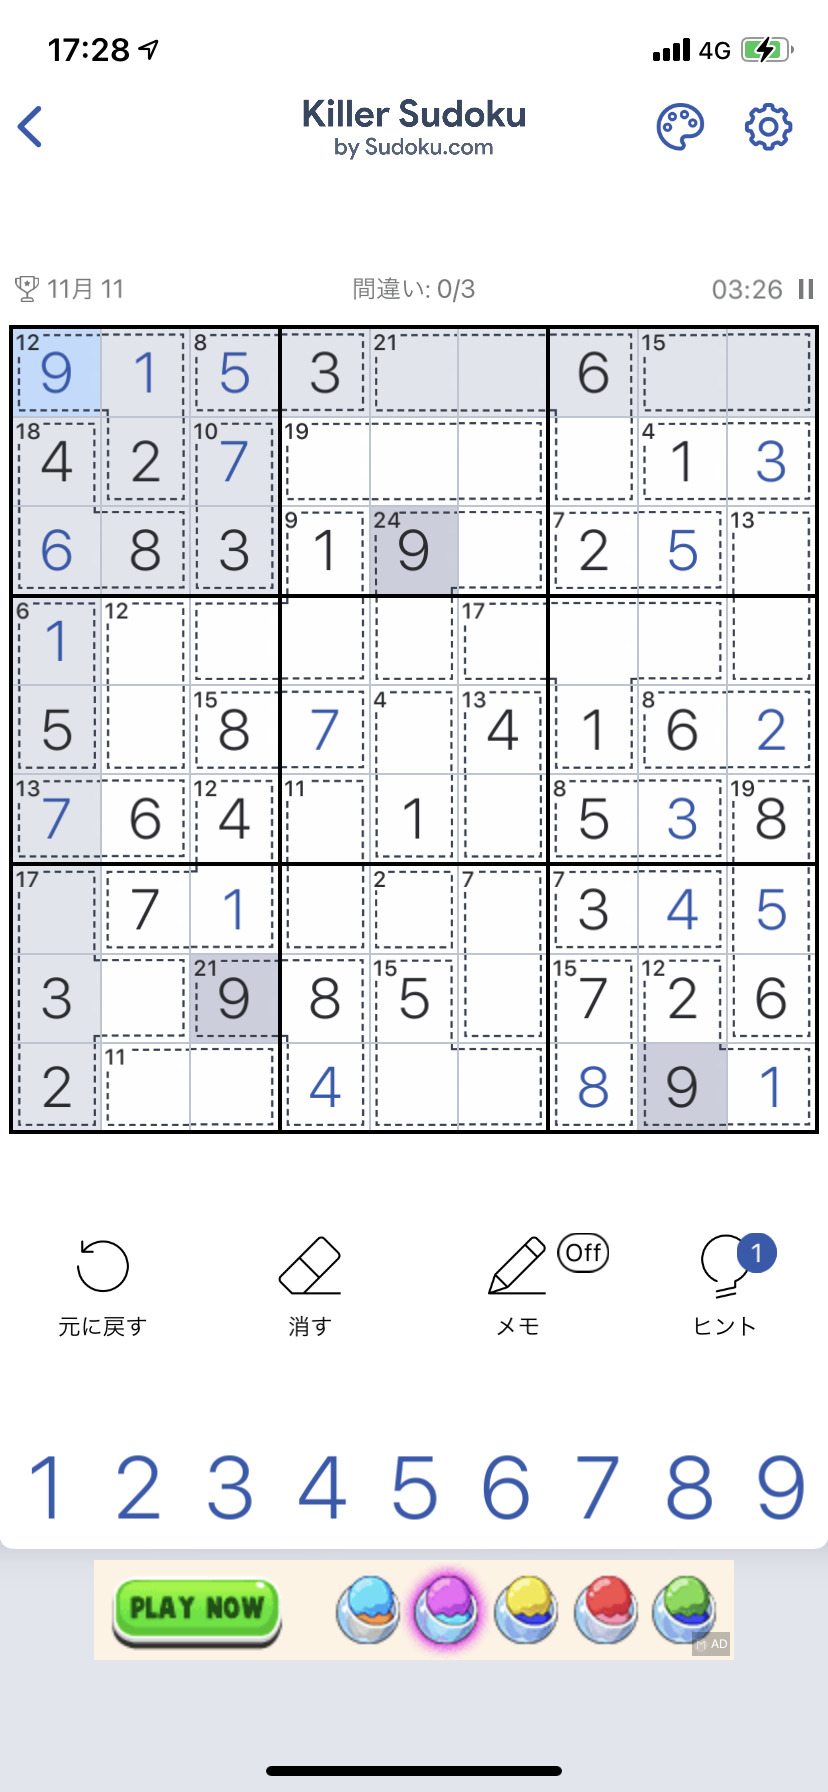 キラーナンプレ Sudoku.comのプレイ画像3